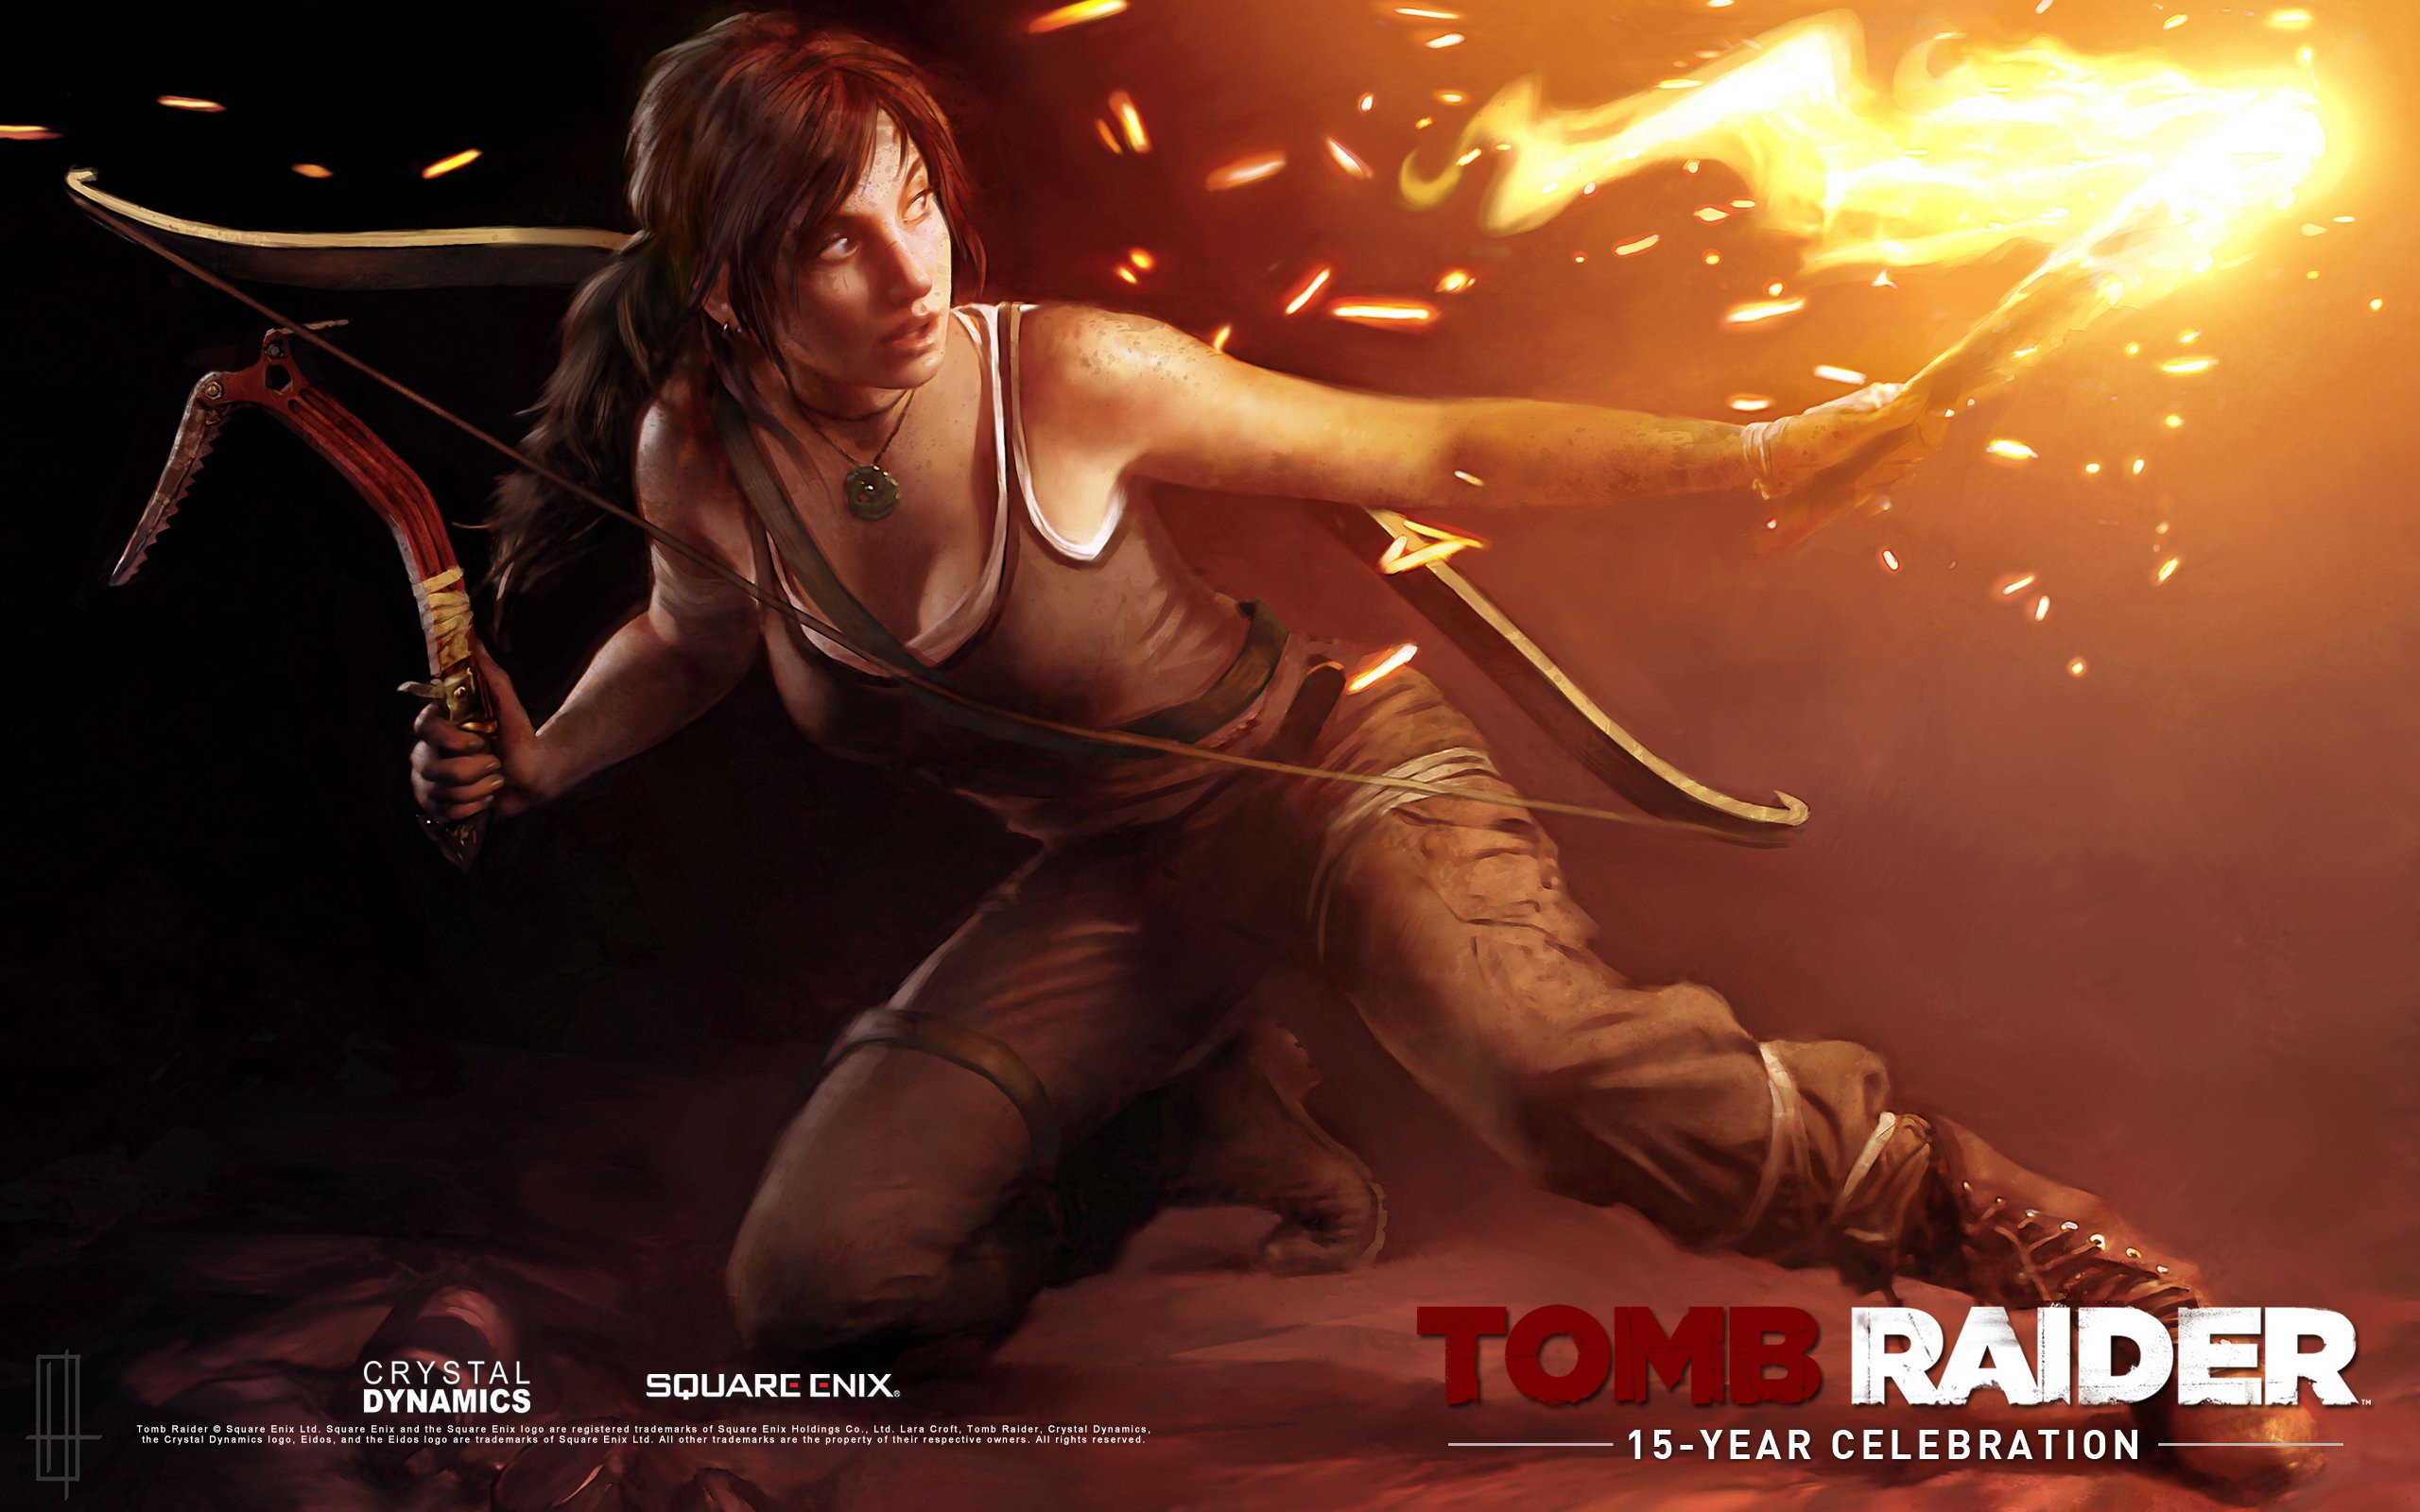 Tomb Raider 15-Year Celebration 古墓丽影15周年纪念版 高清壁纸11 - 2560x1600